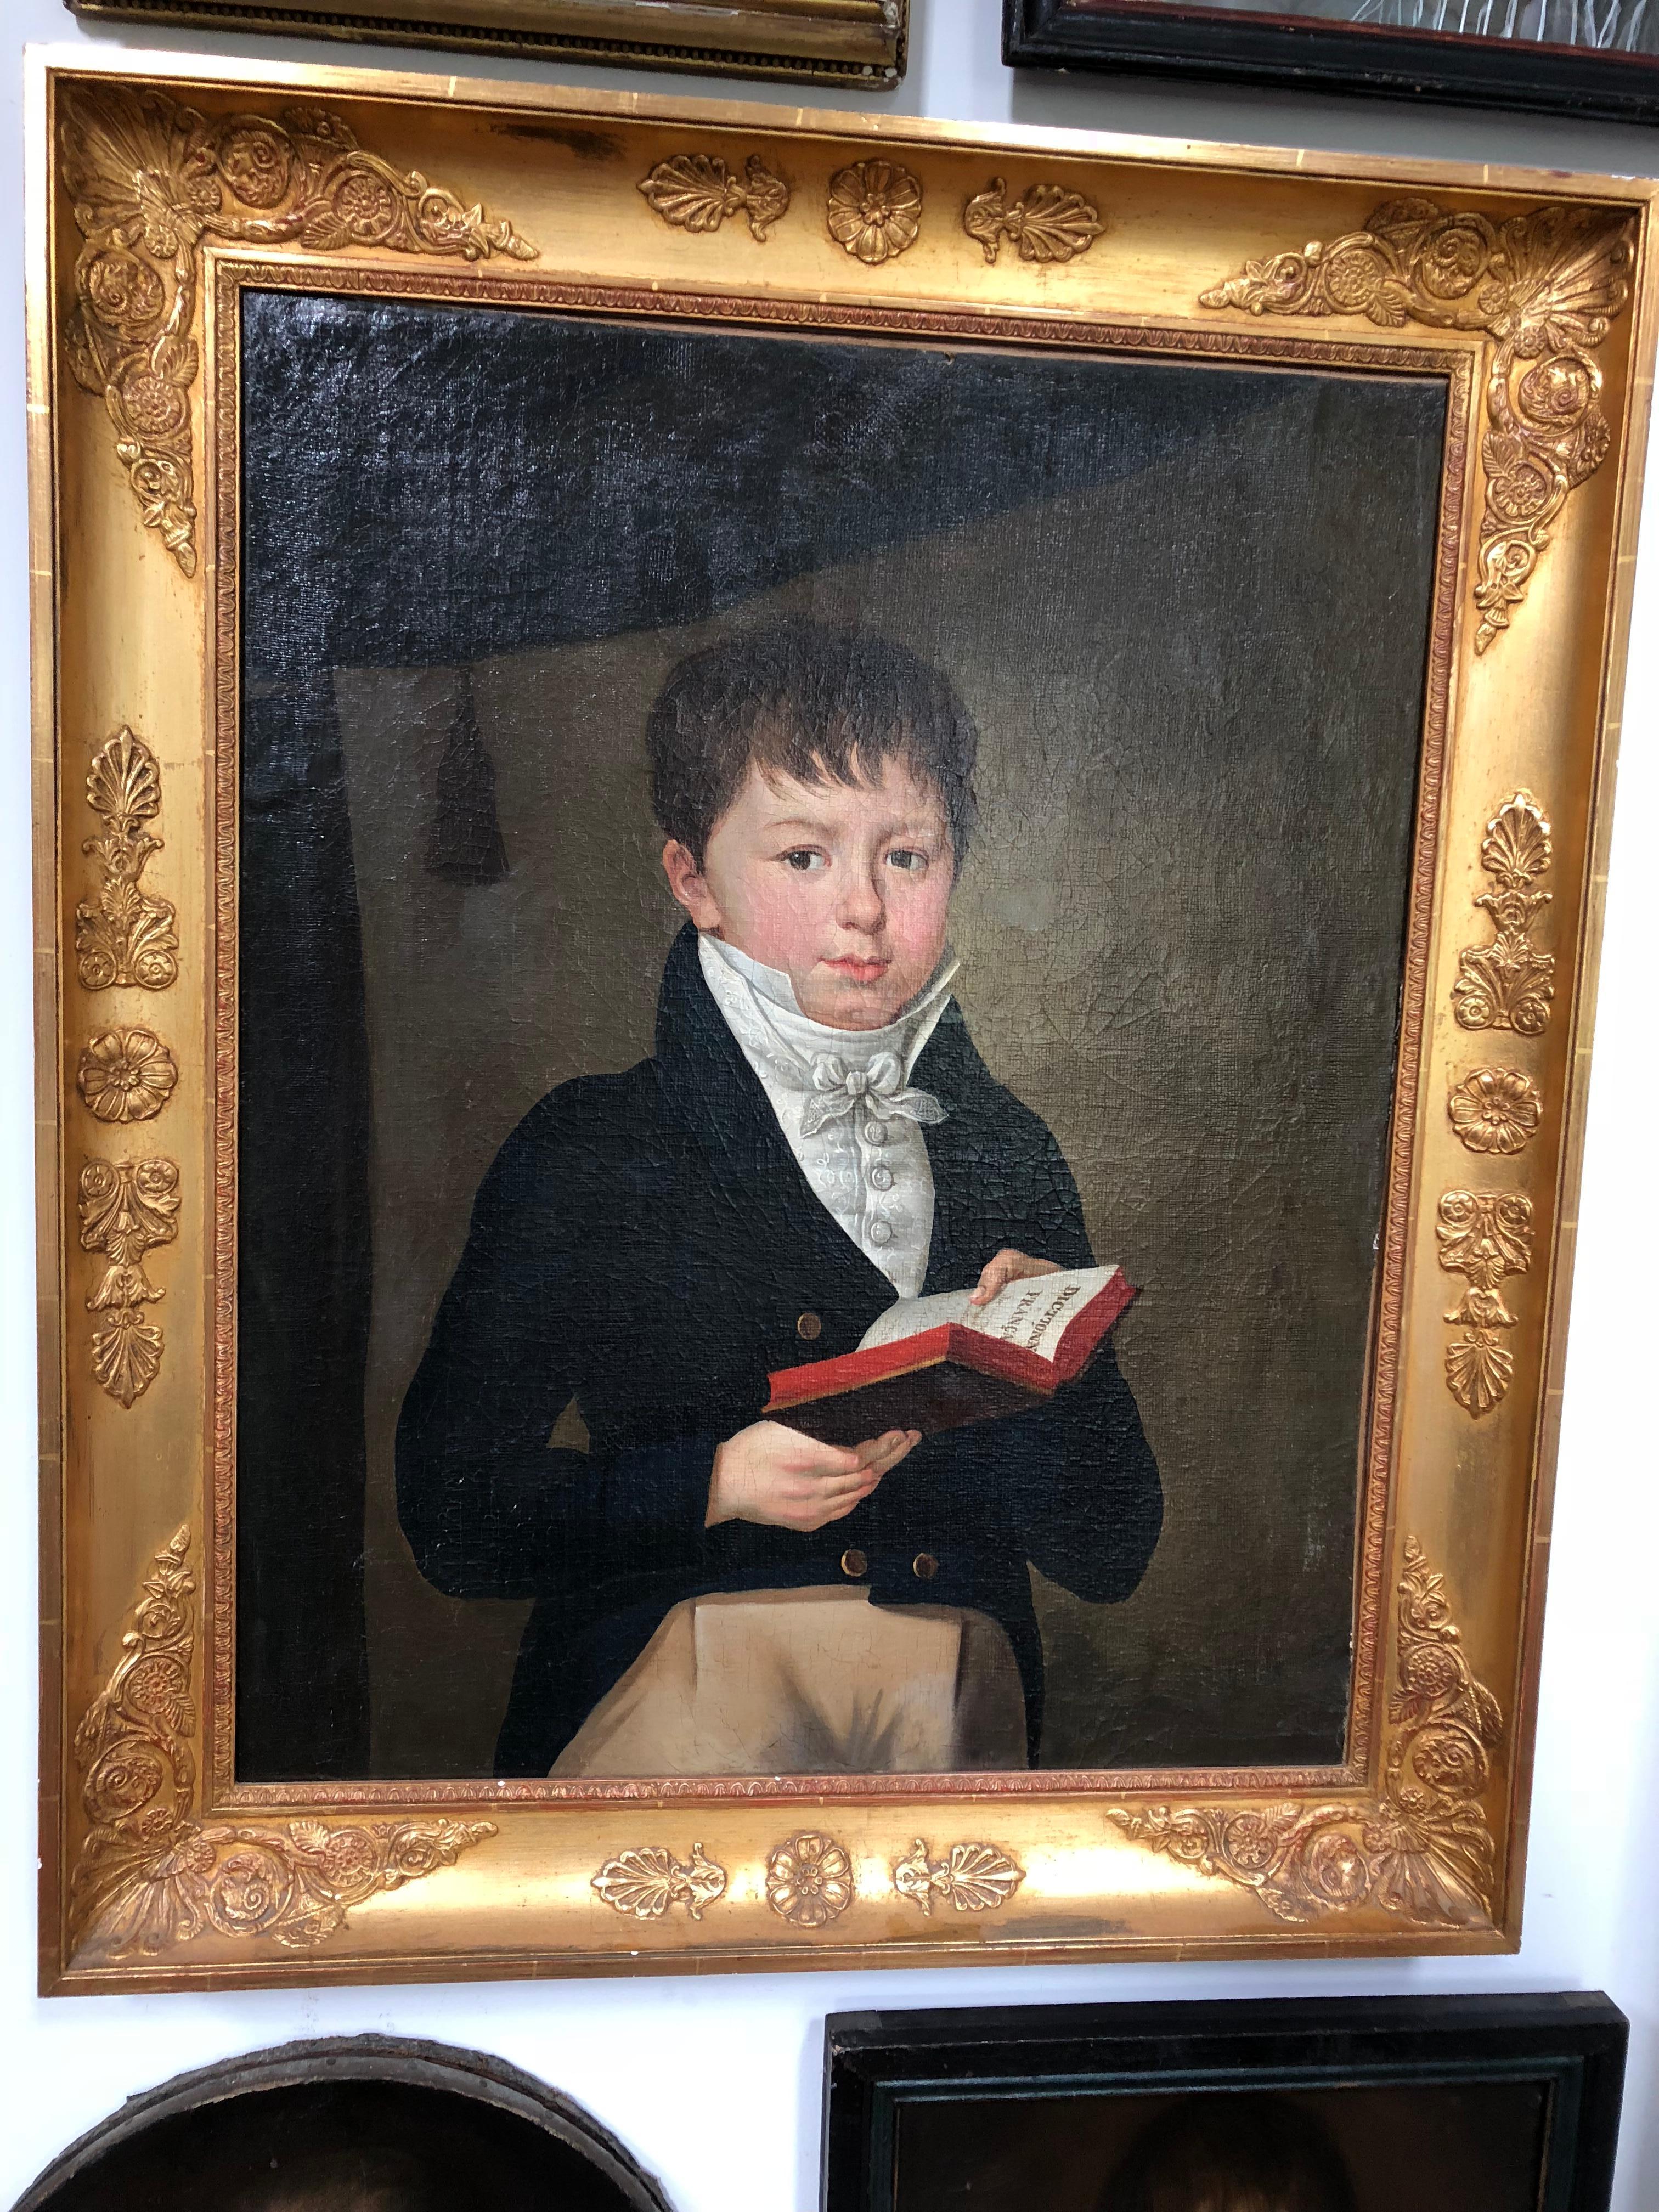 Un beau portrait grandeur nature, à l'huile sur toile, d'un jeune garçon habillé en tenue d'époque, tenant un livre intitulé 